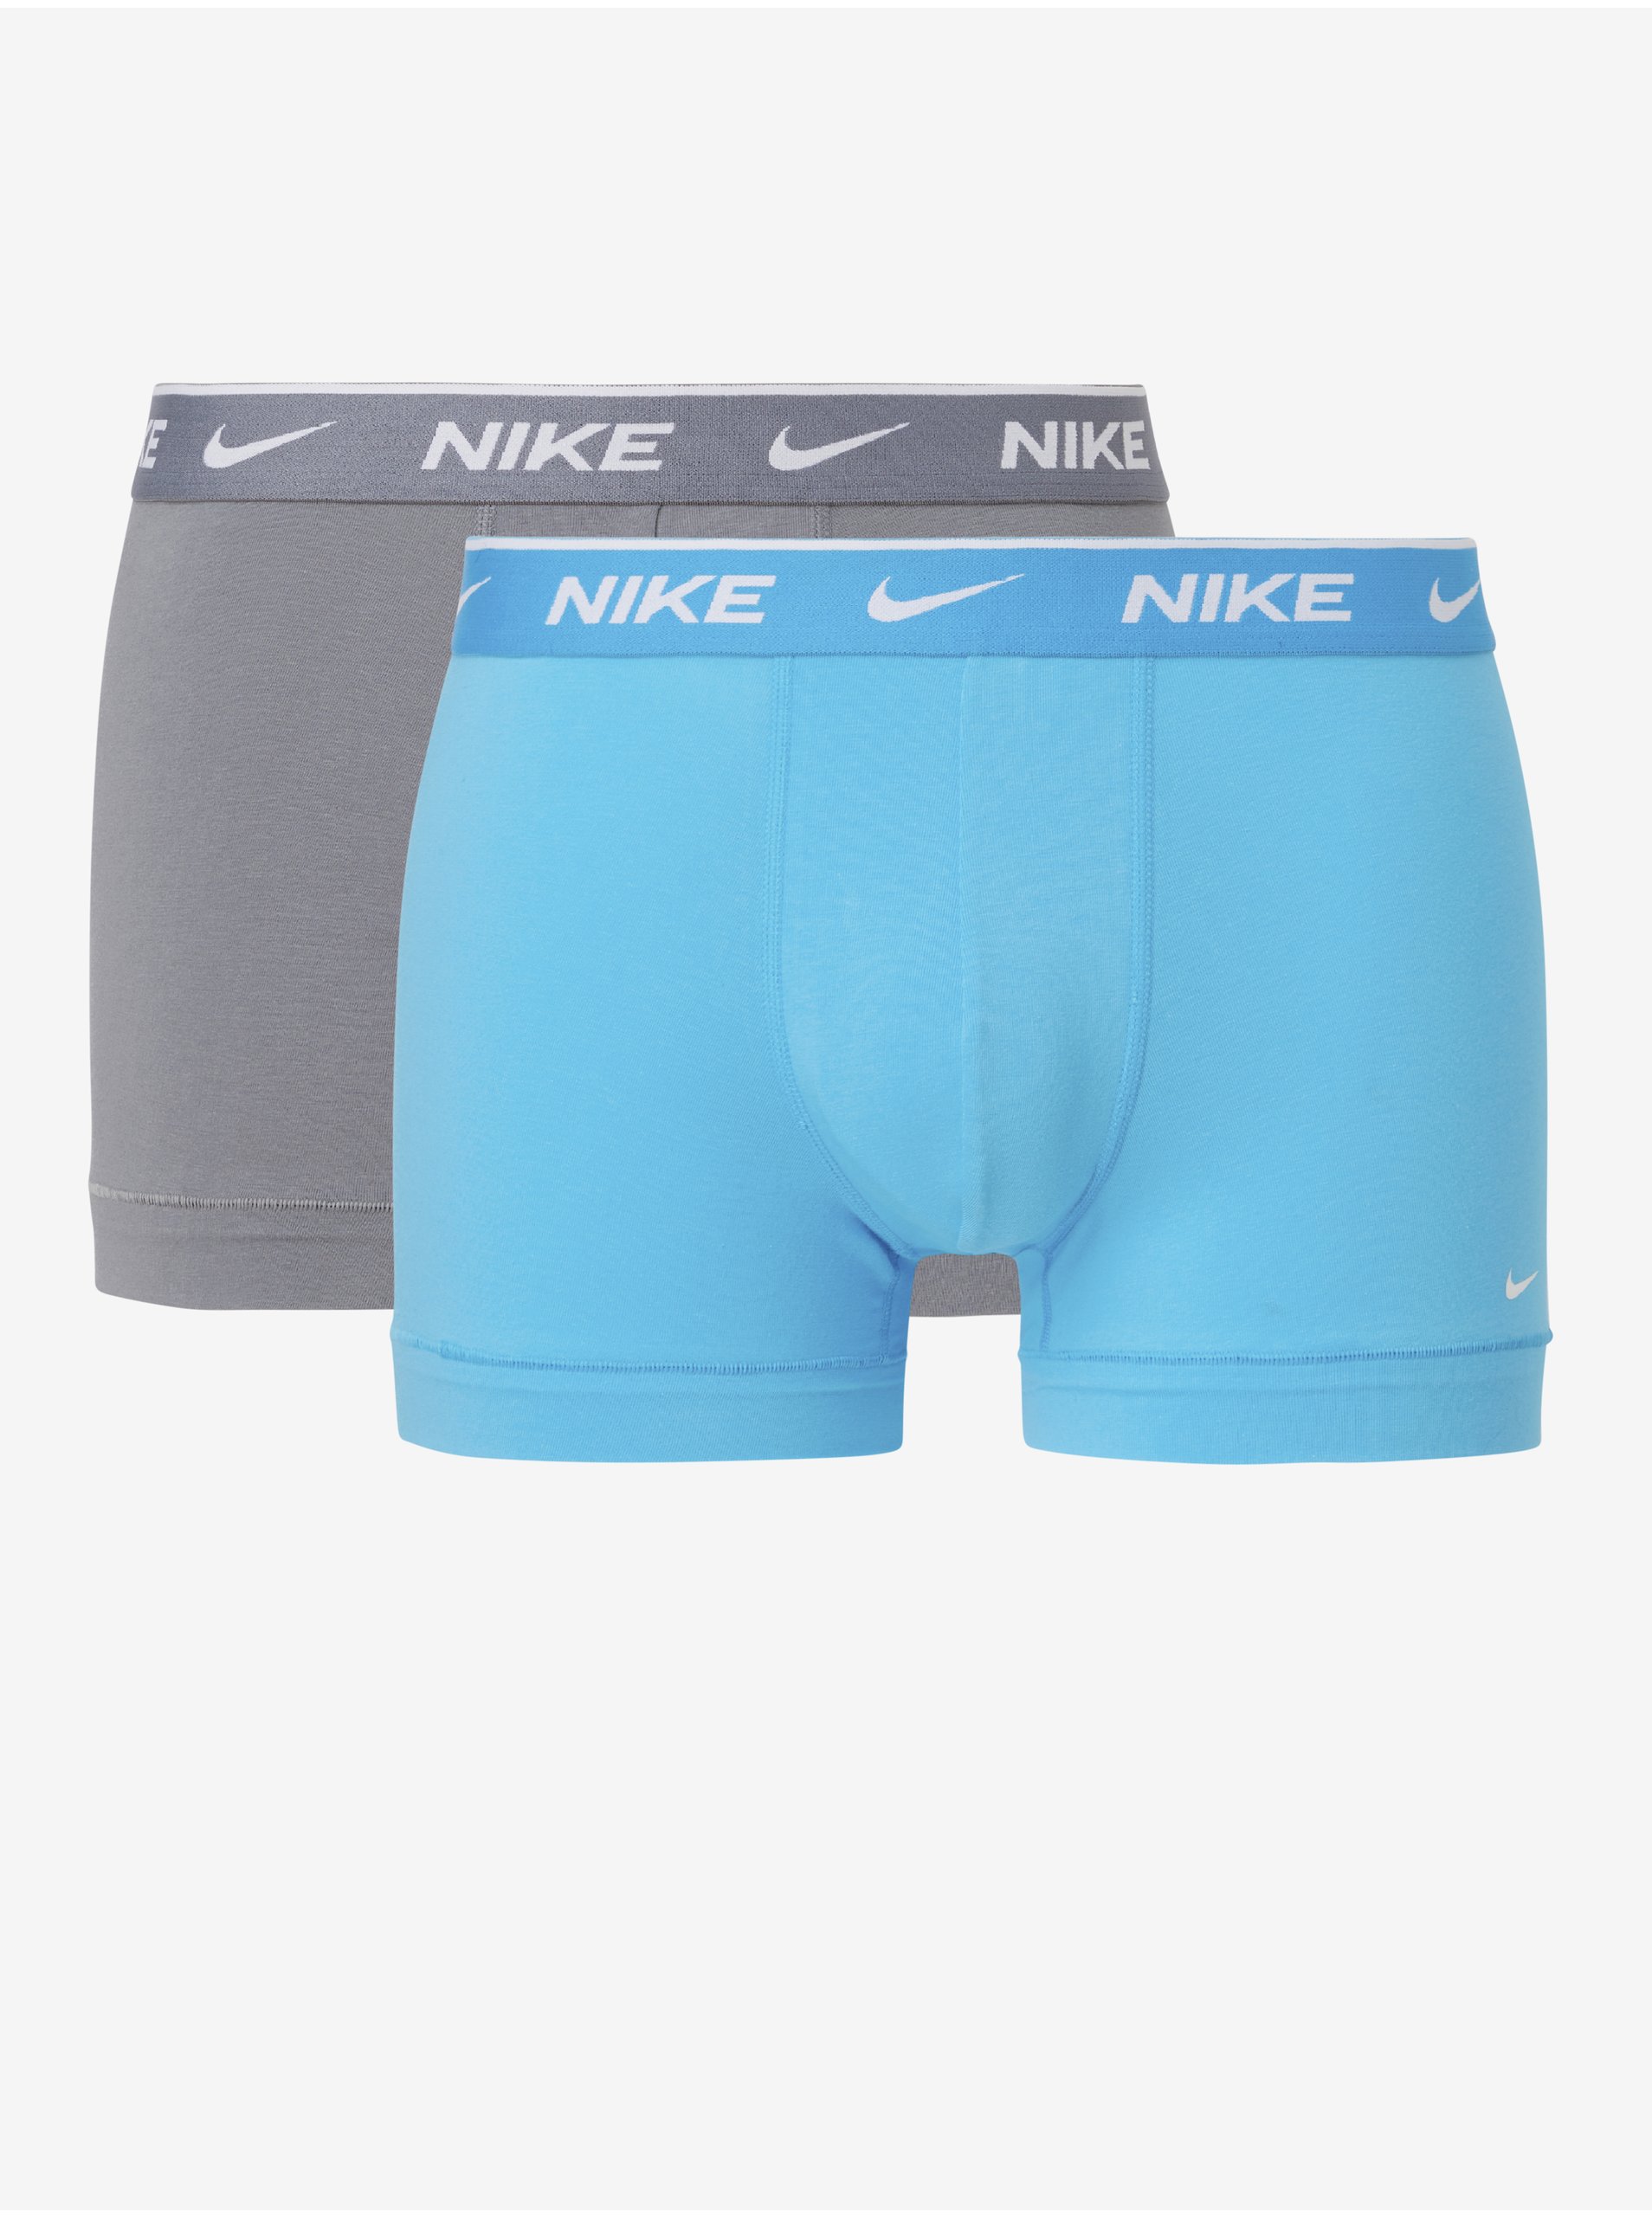 Lacno Sada dvoch pánských boxerok v modrej a šedej farbe Nike